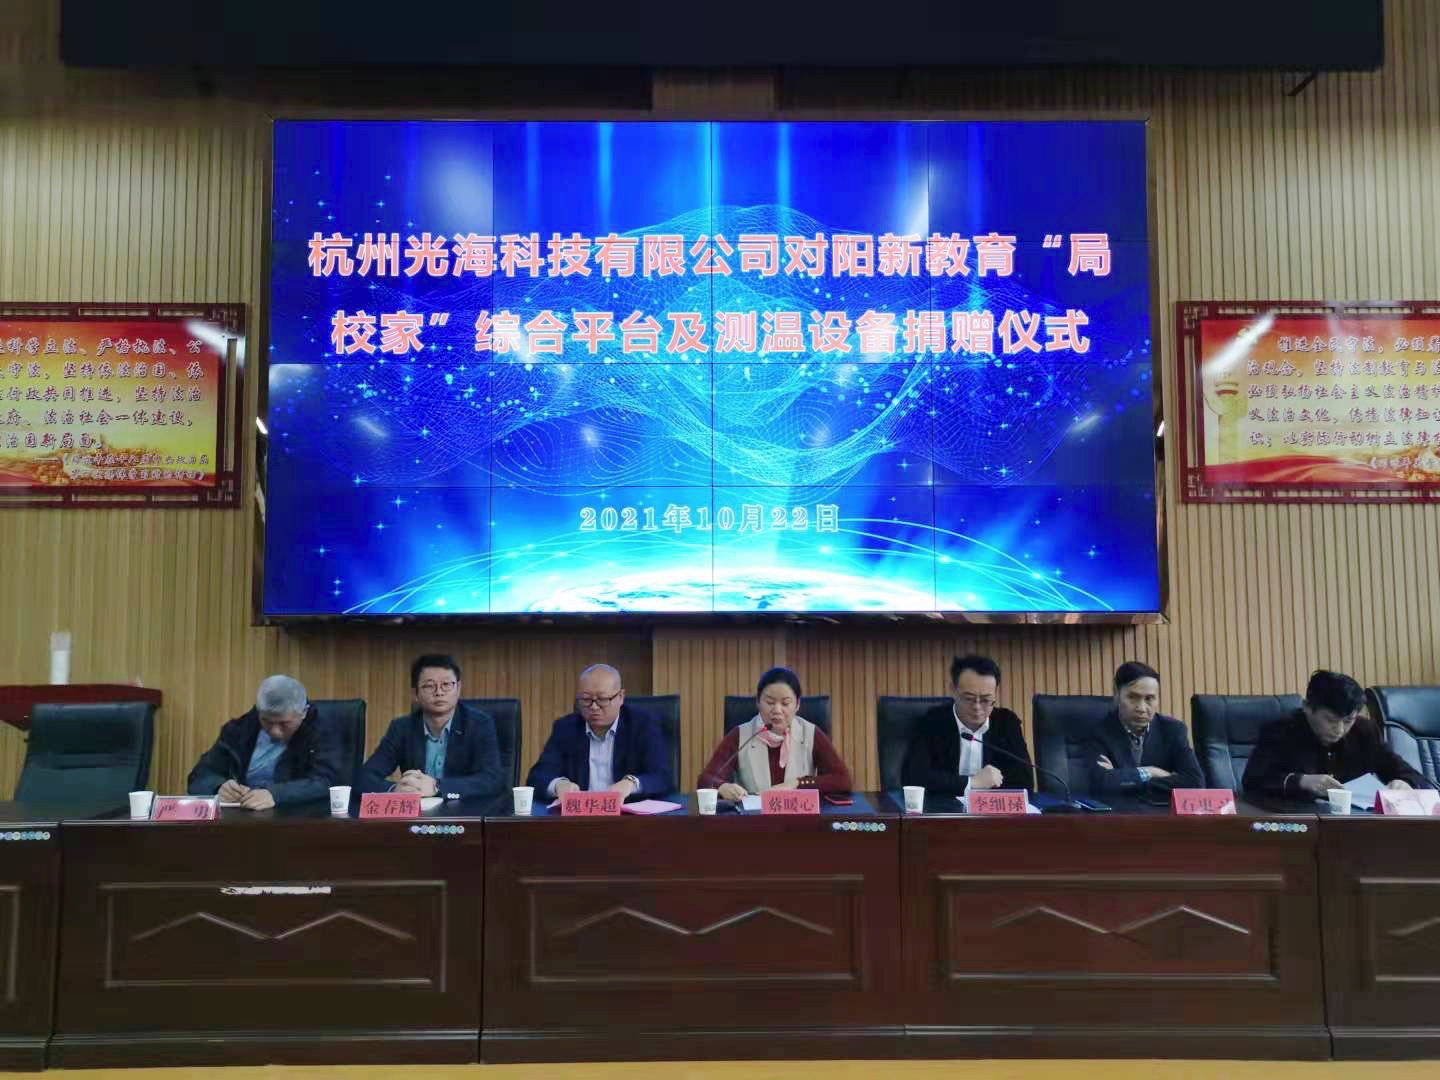 四海资讯网址导航科技与阳新县就教育信息化达成战略合作